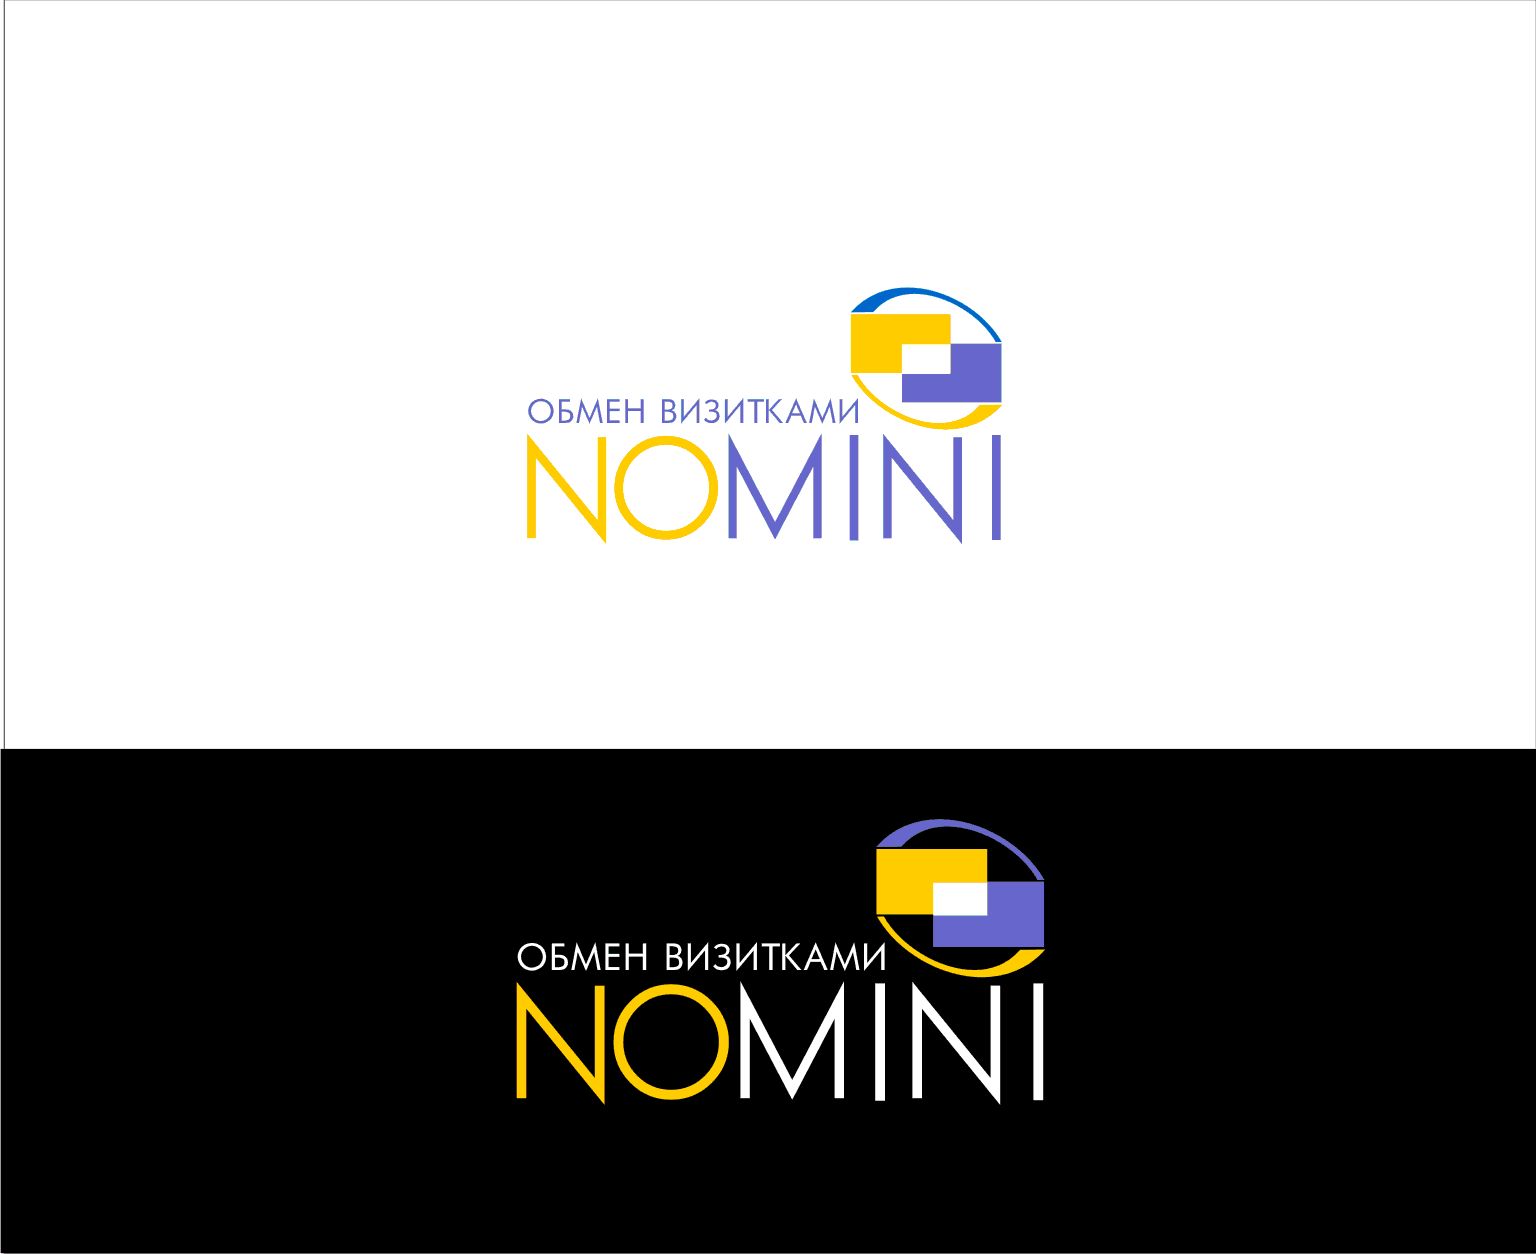 Логотип и иконка для iOS-приложения Nomini - дизайнер vladim